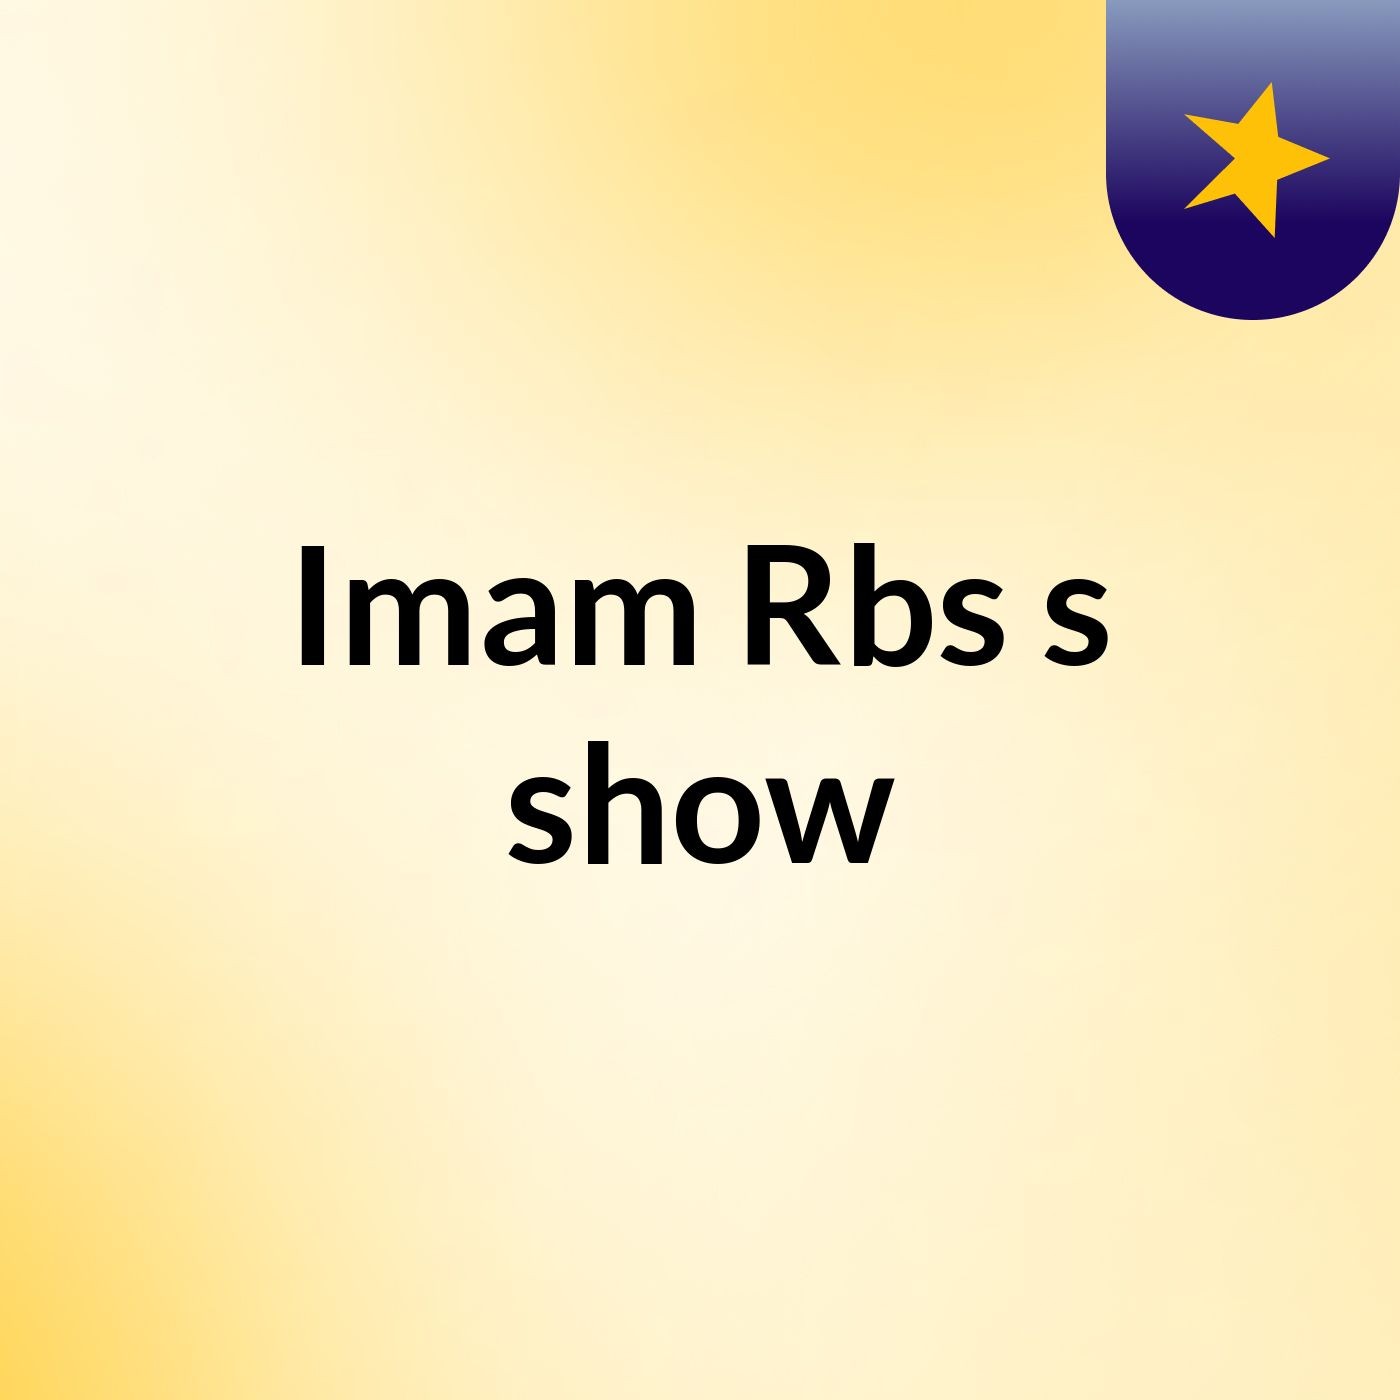 Imam Rbs's show